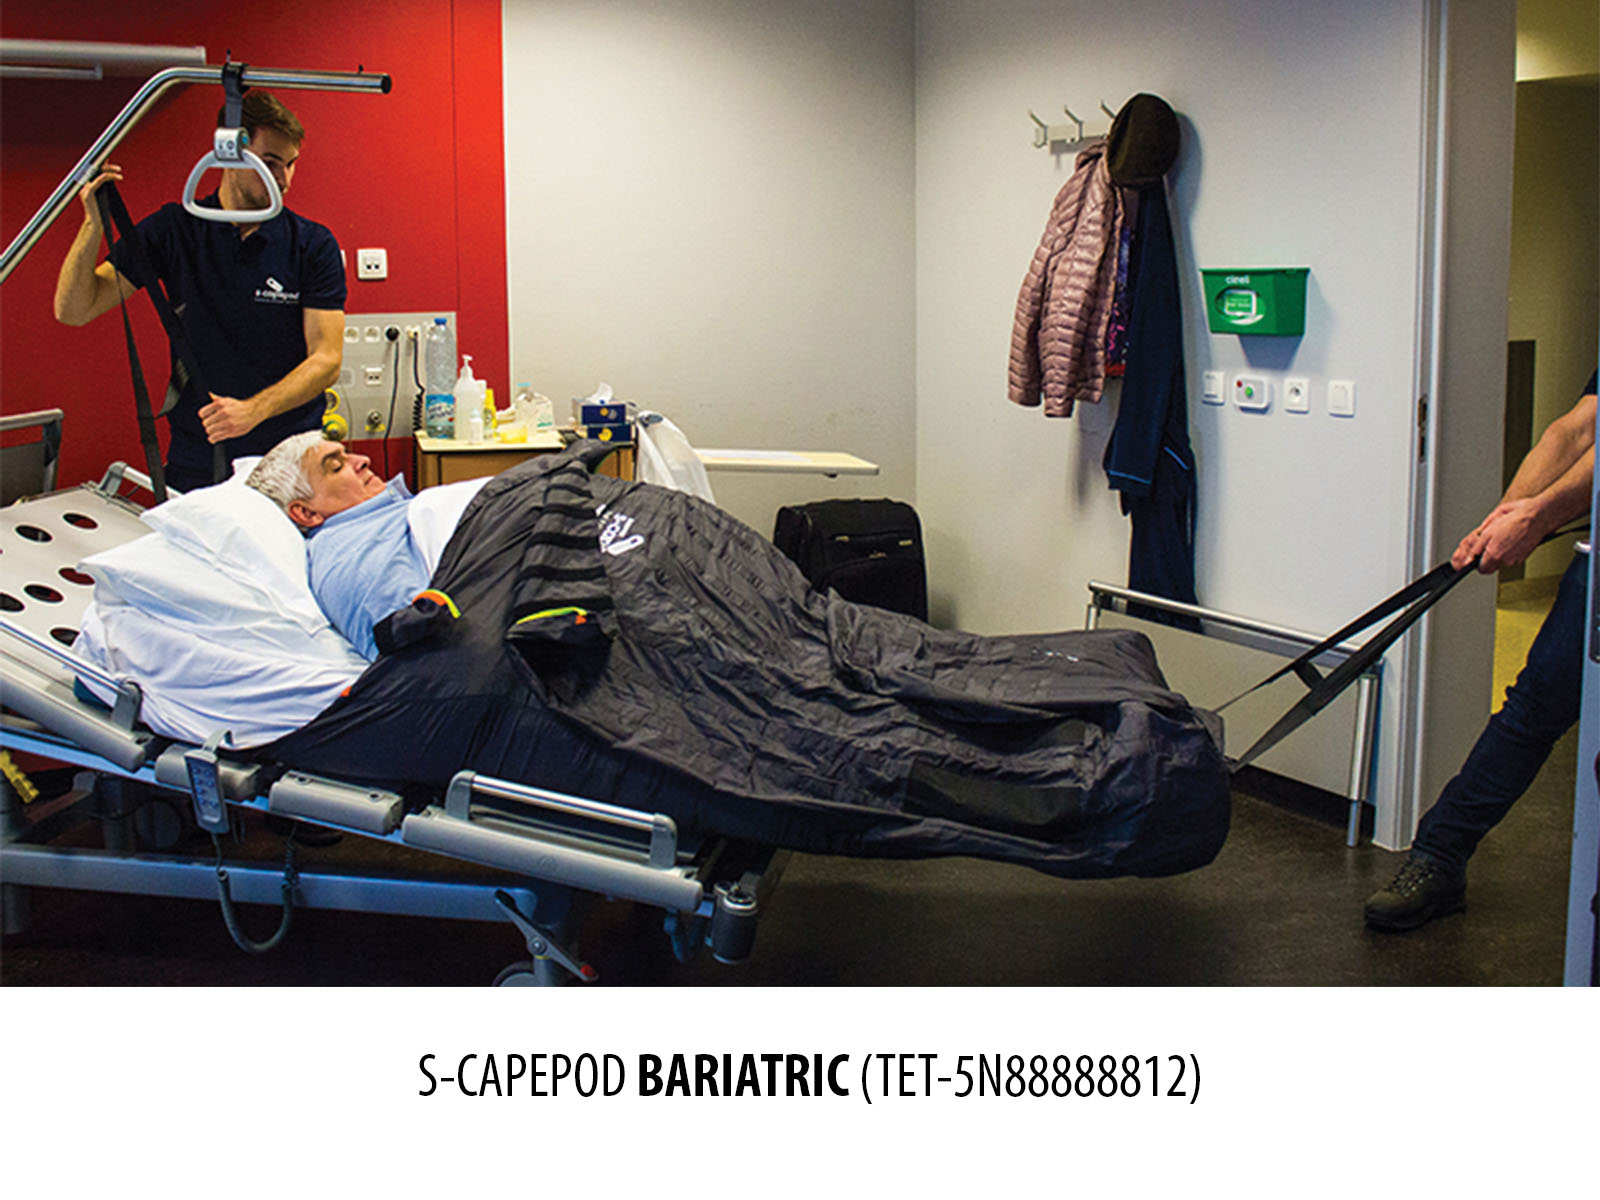 S-CAPEPOD Bariatric Evacuation Sheet